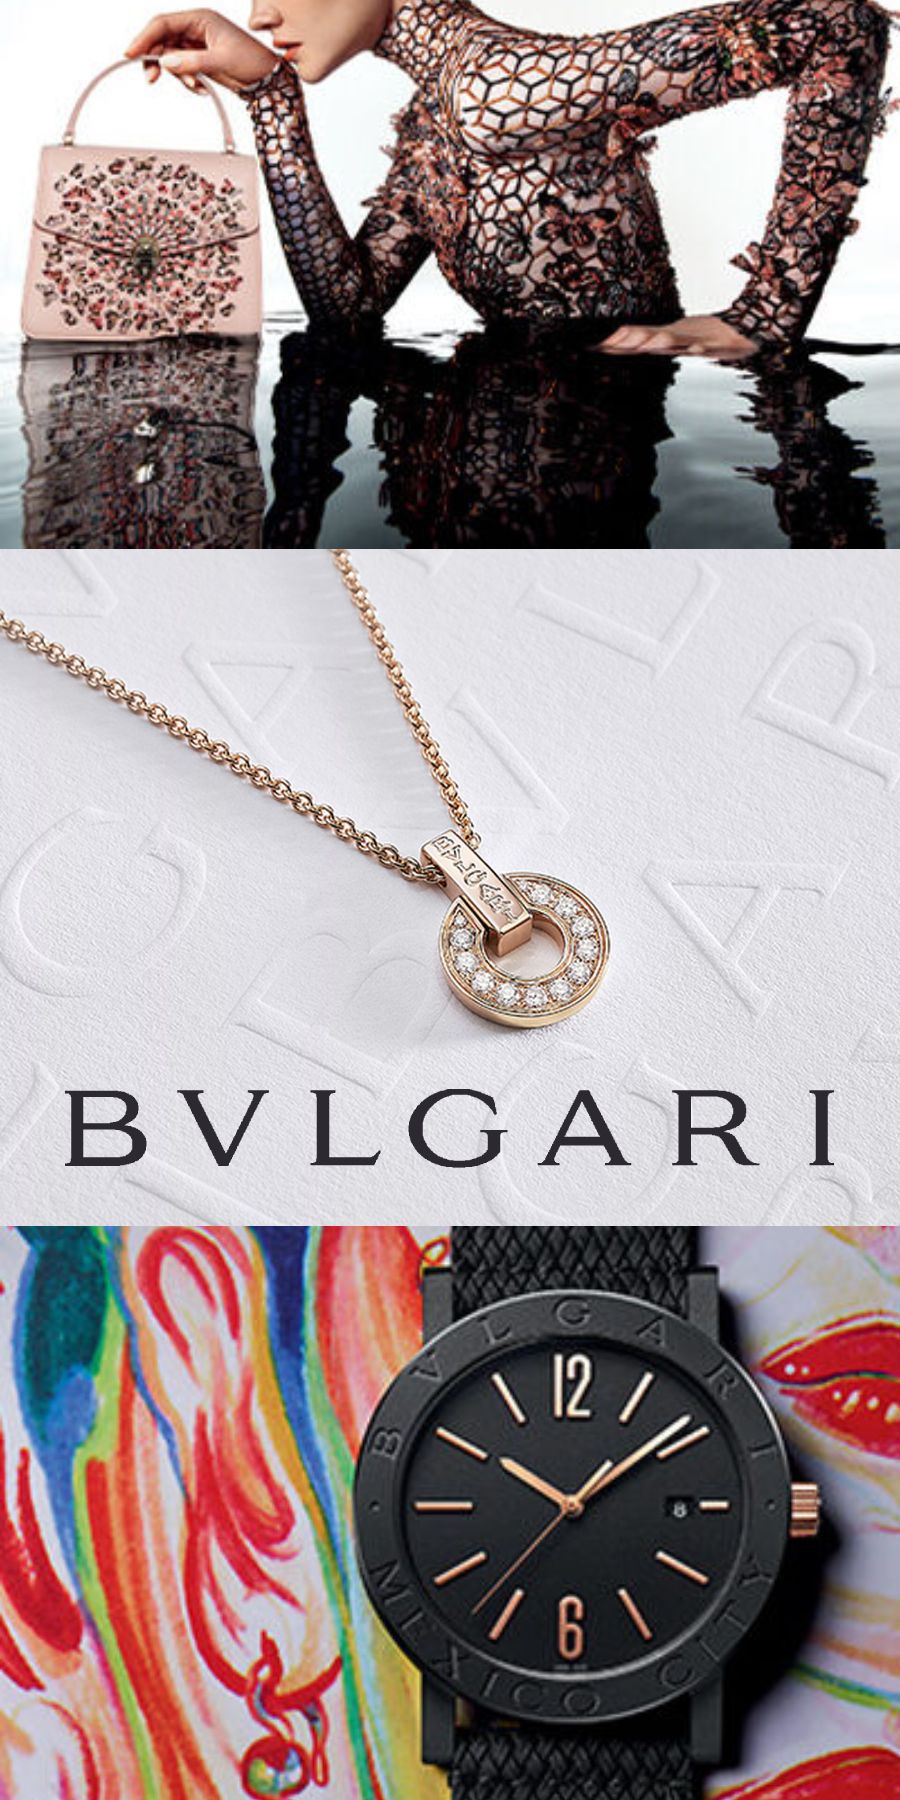 BVLGARI(ブルガリ)買取専門店